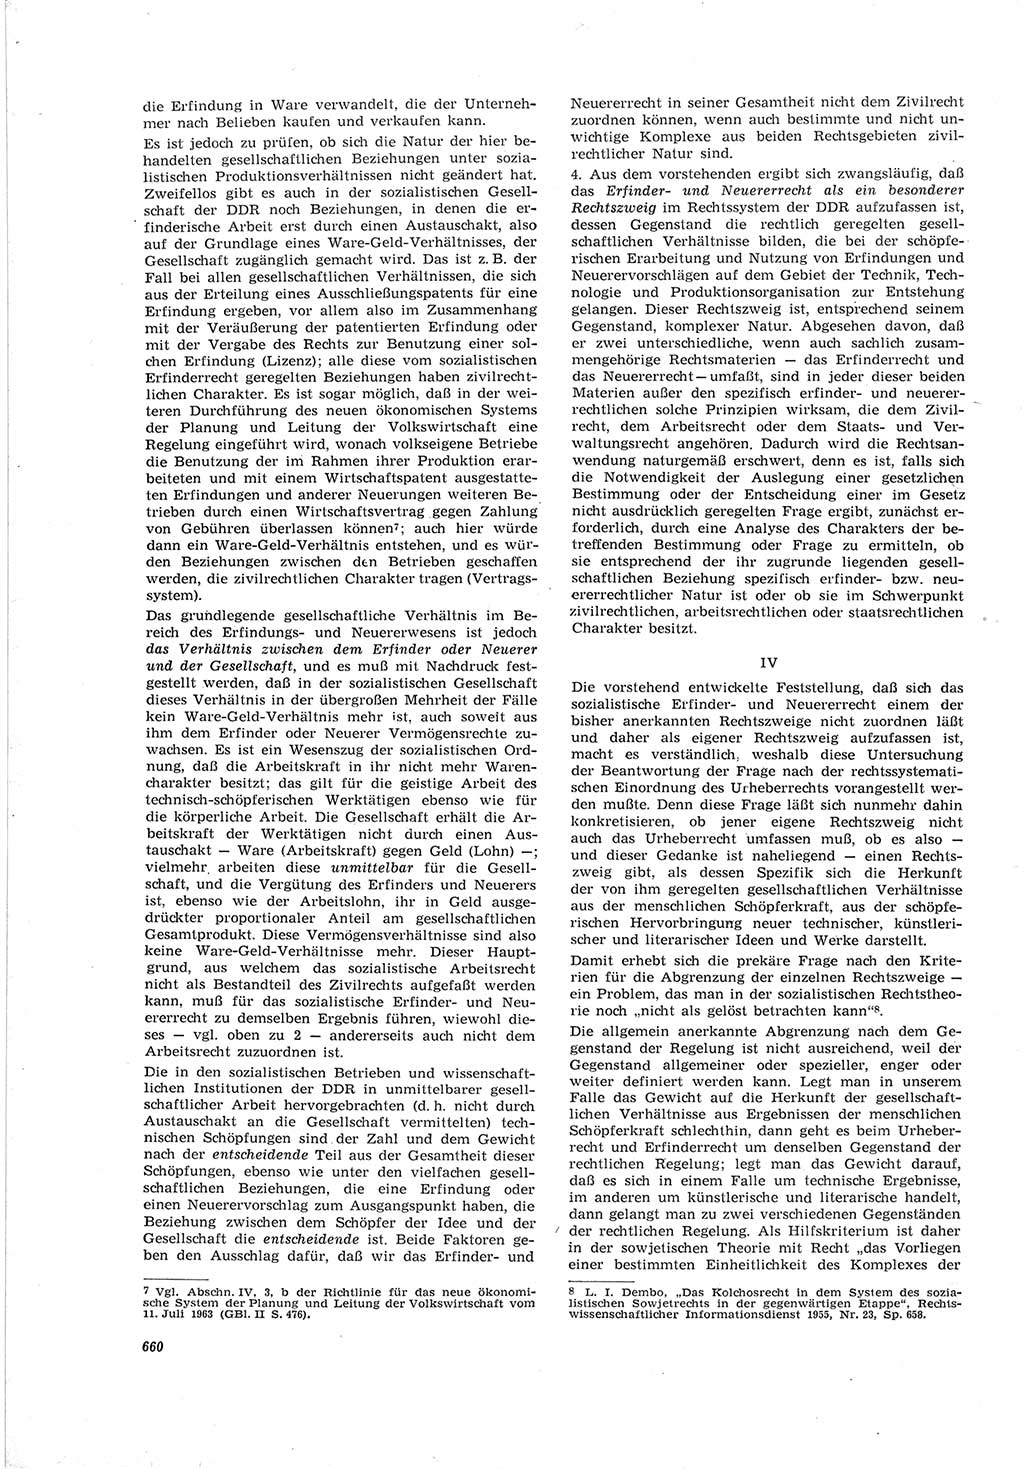 Neue Justiz (NJ), Zeitschrift für Recht und Rechtswissenschaft [Deutsche Demokratische Republik (DDR)], 19. Jahrgang 1965, Seite 660 (NJ DDR 1965, S. 660)